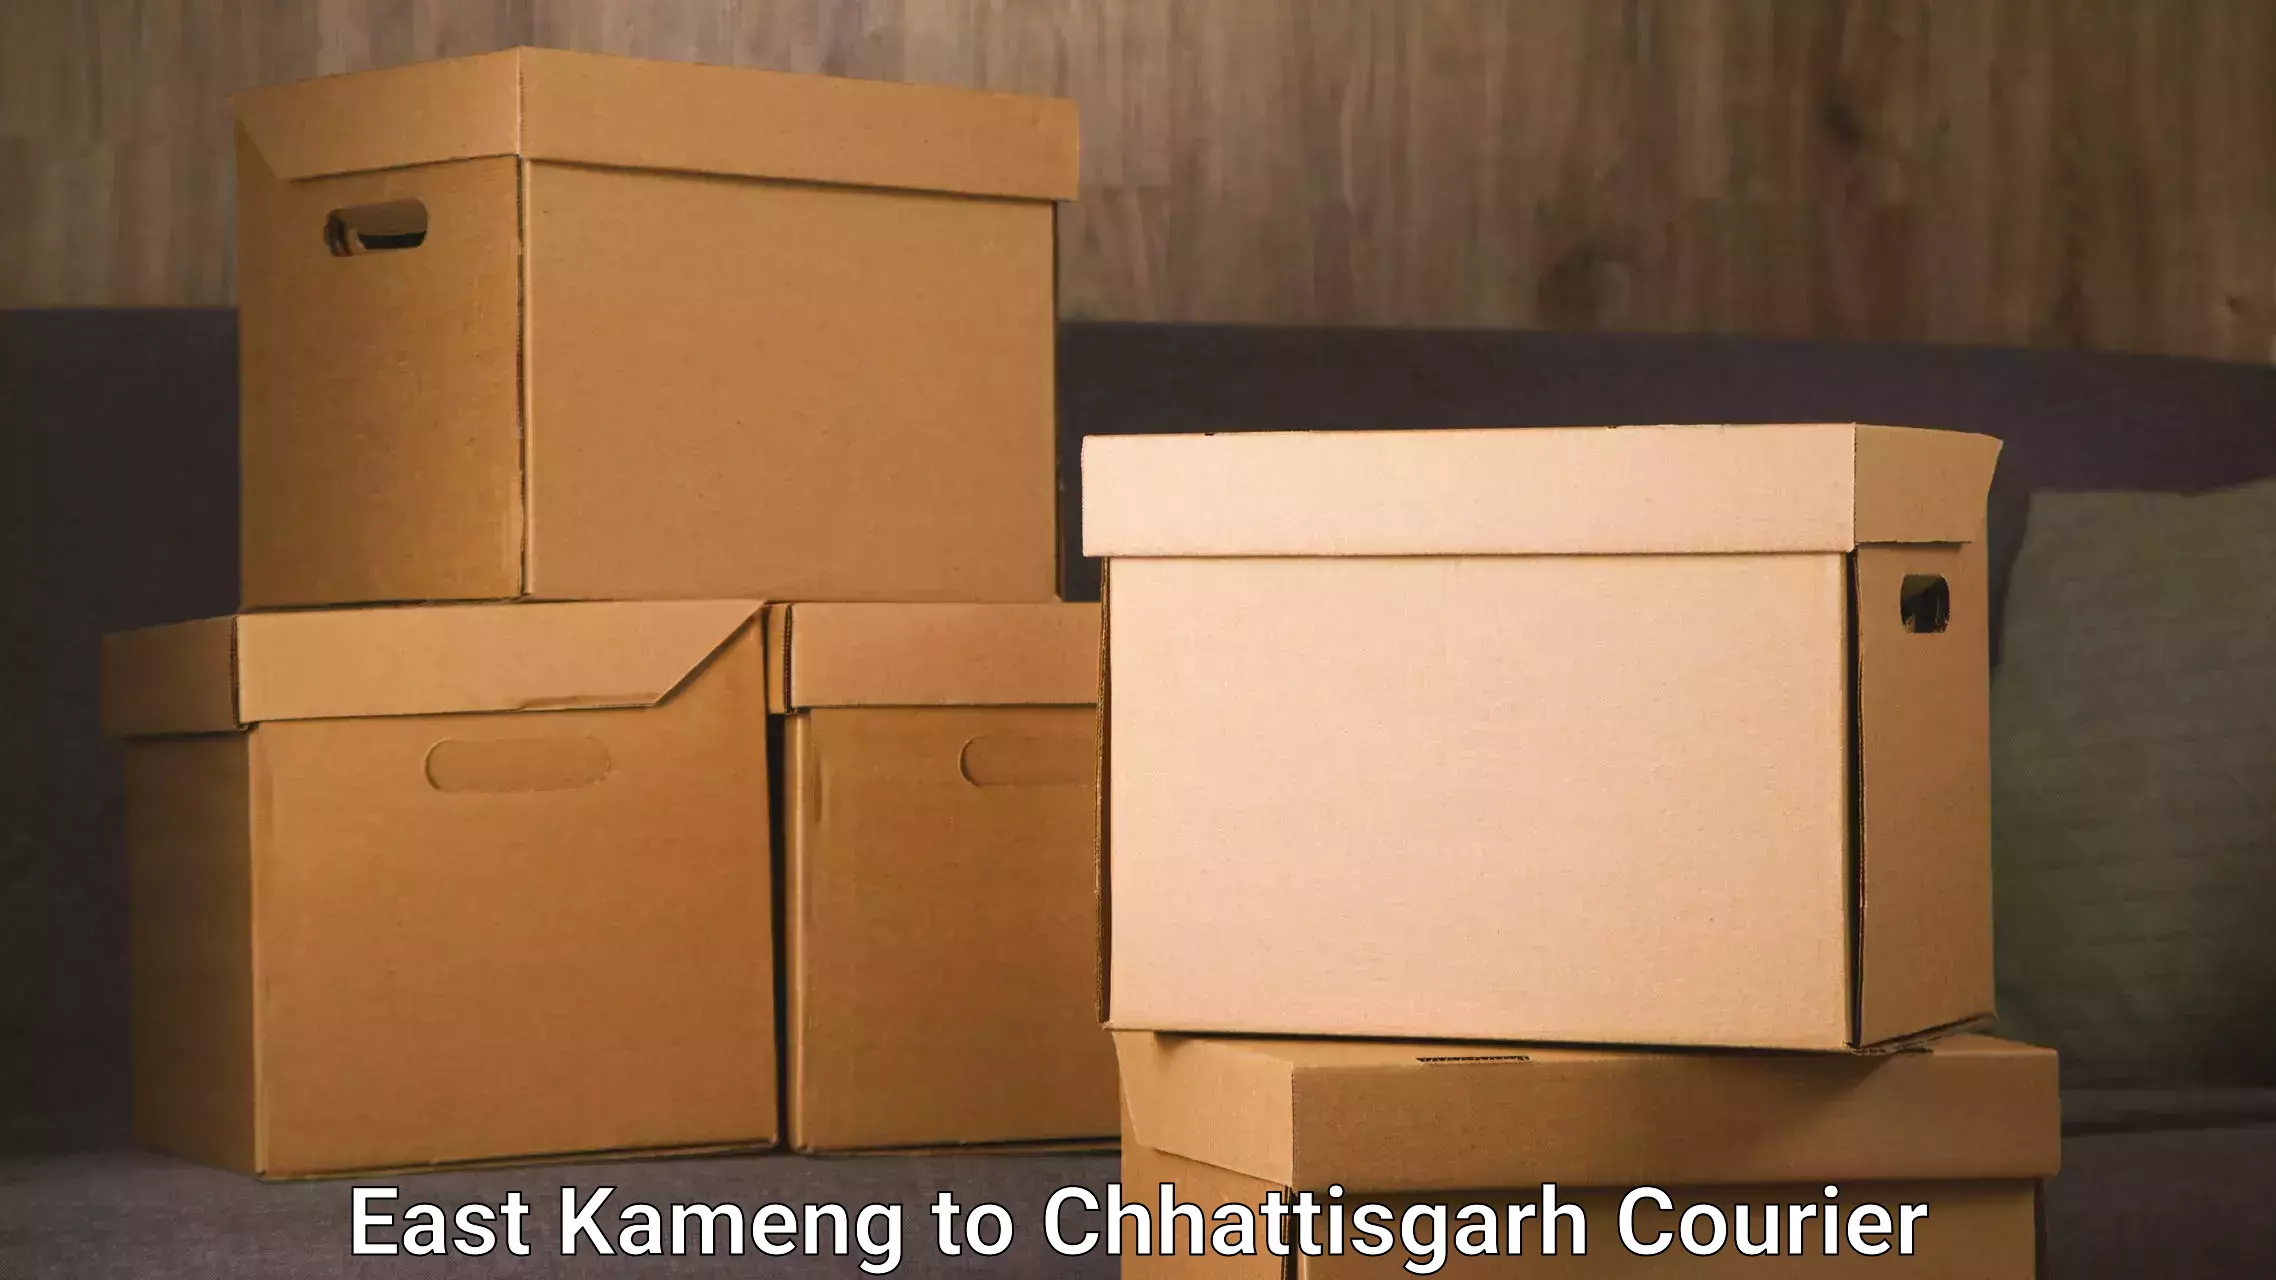 Express logistics East Kameng to Raigarh Chhattisgarh